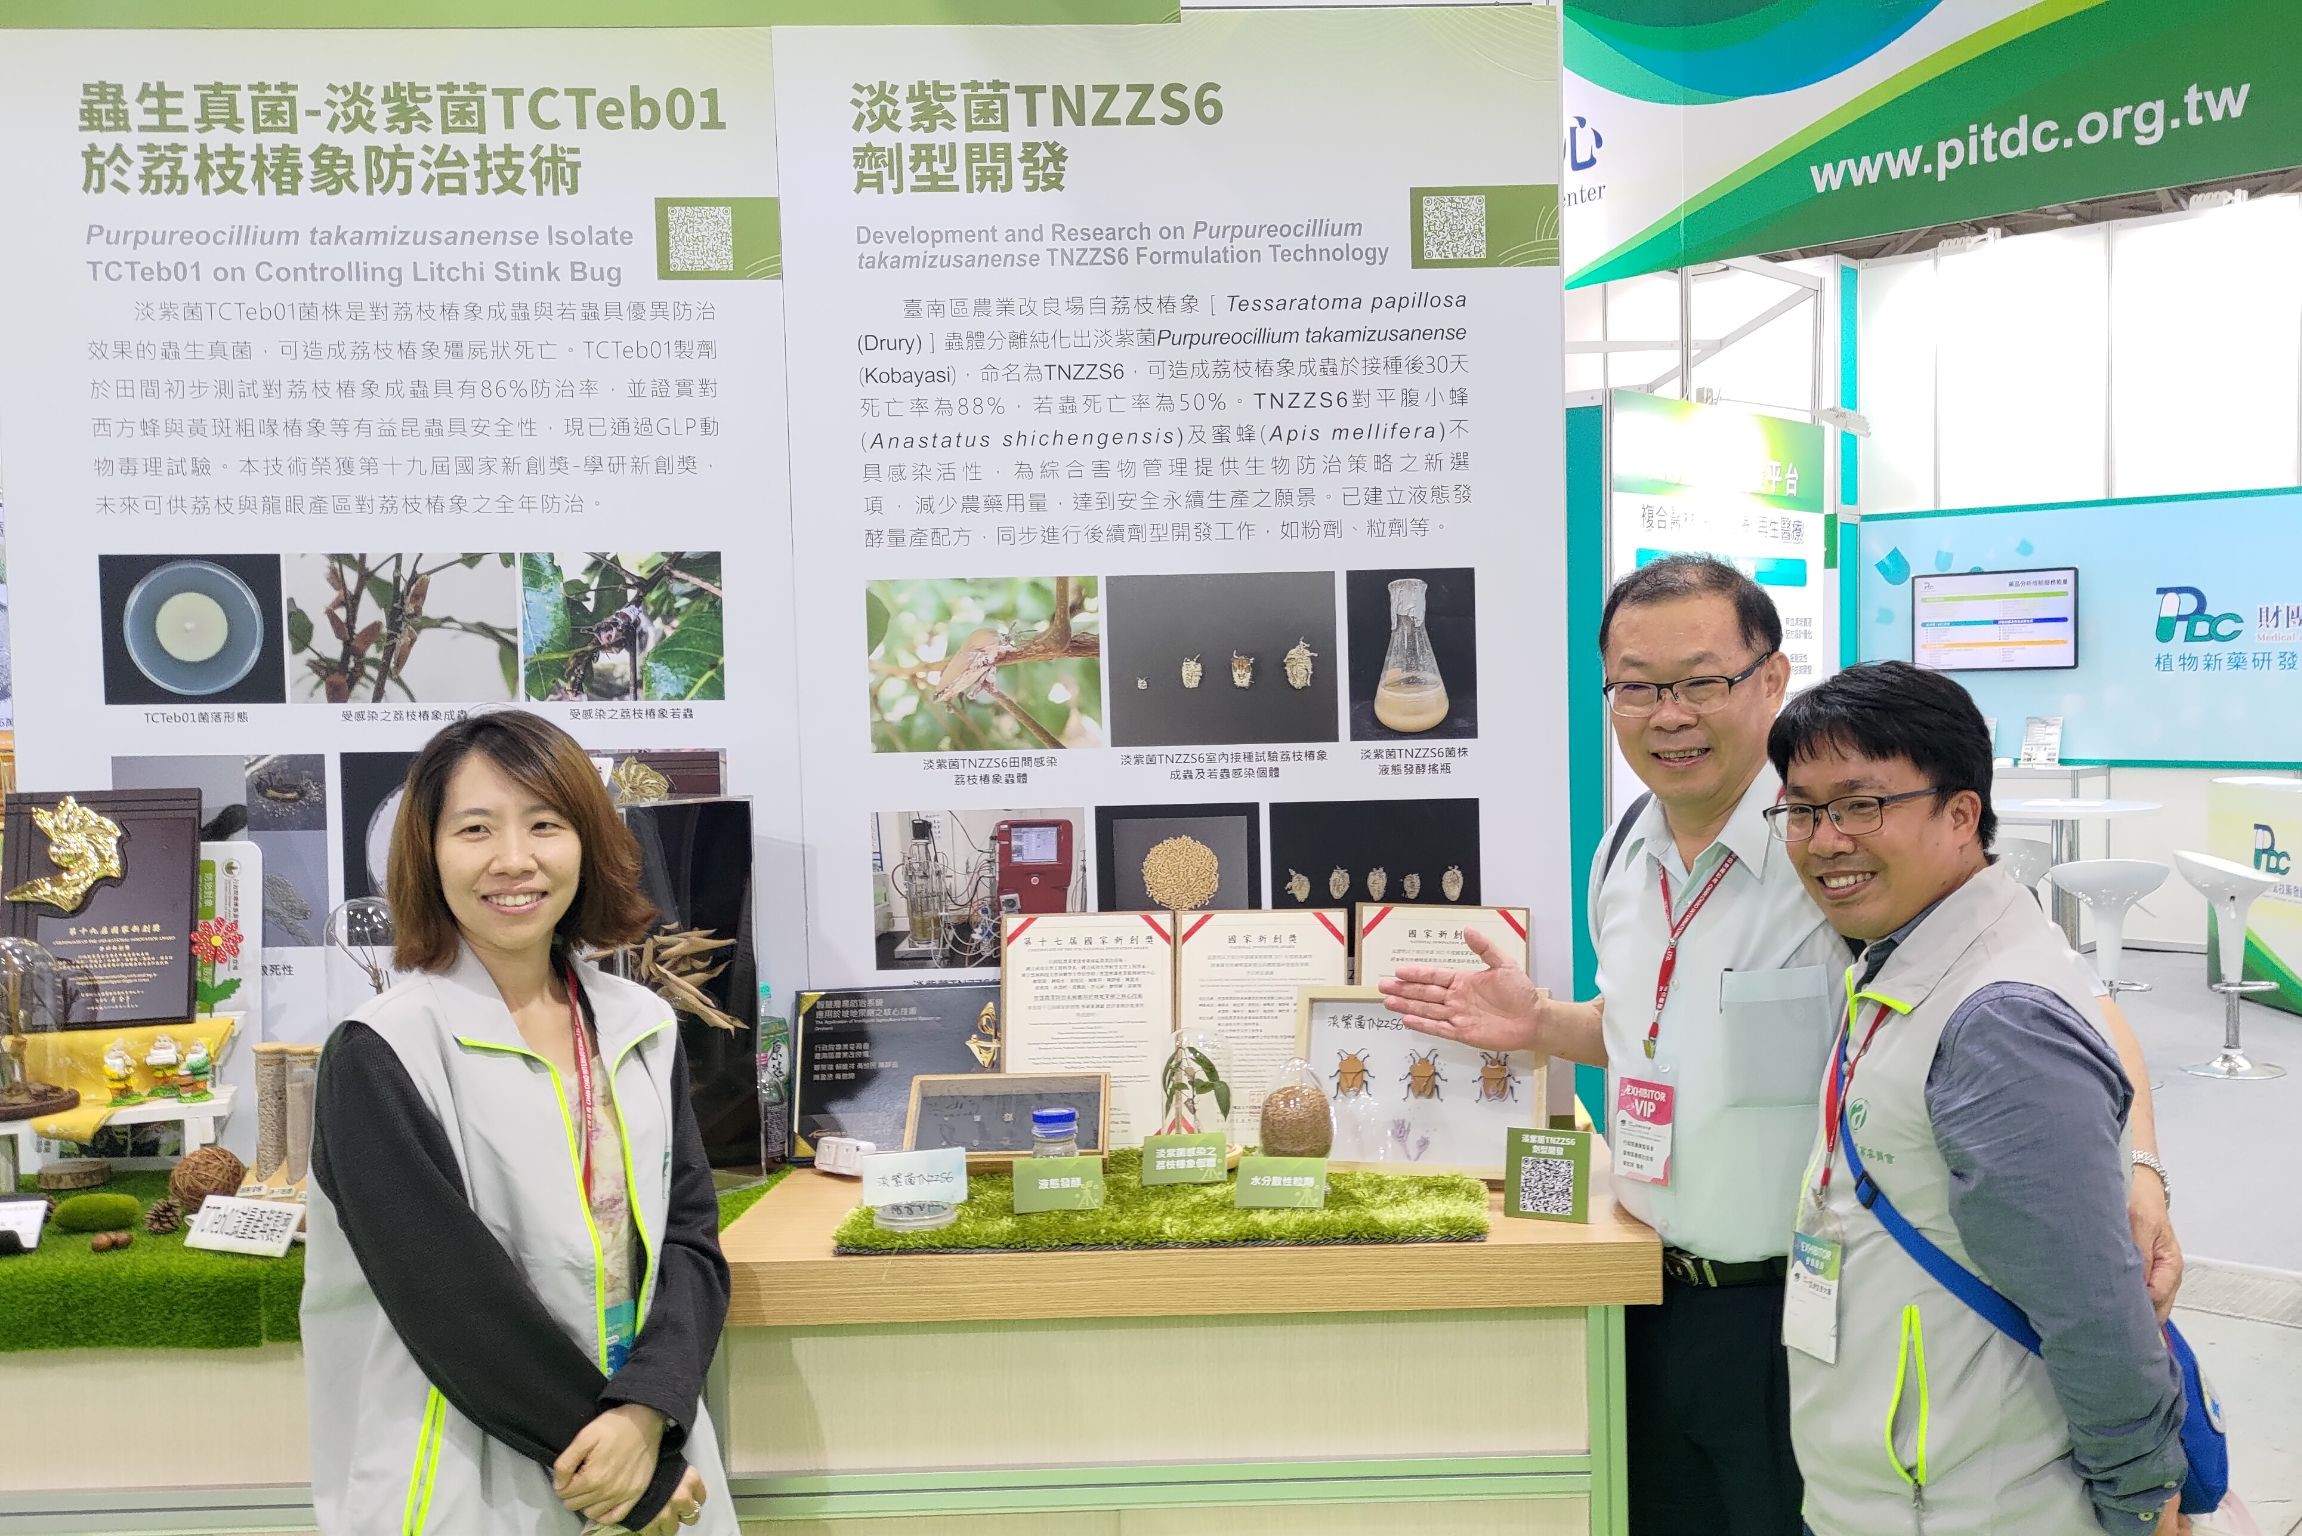 陳昱初副場長率植保團隊展出淡紫菌TNZZS6劑型研發成果